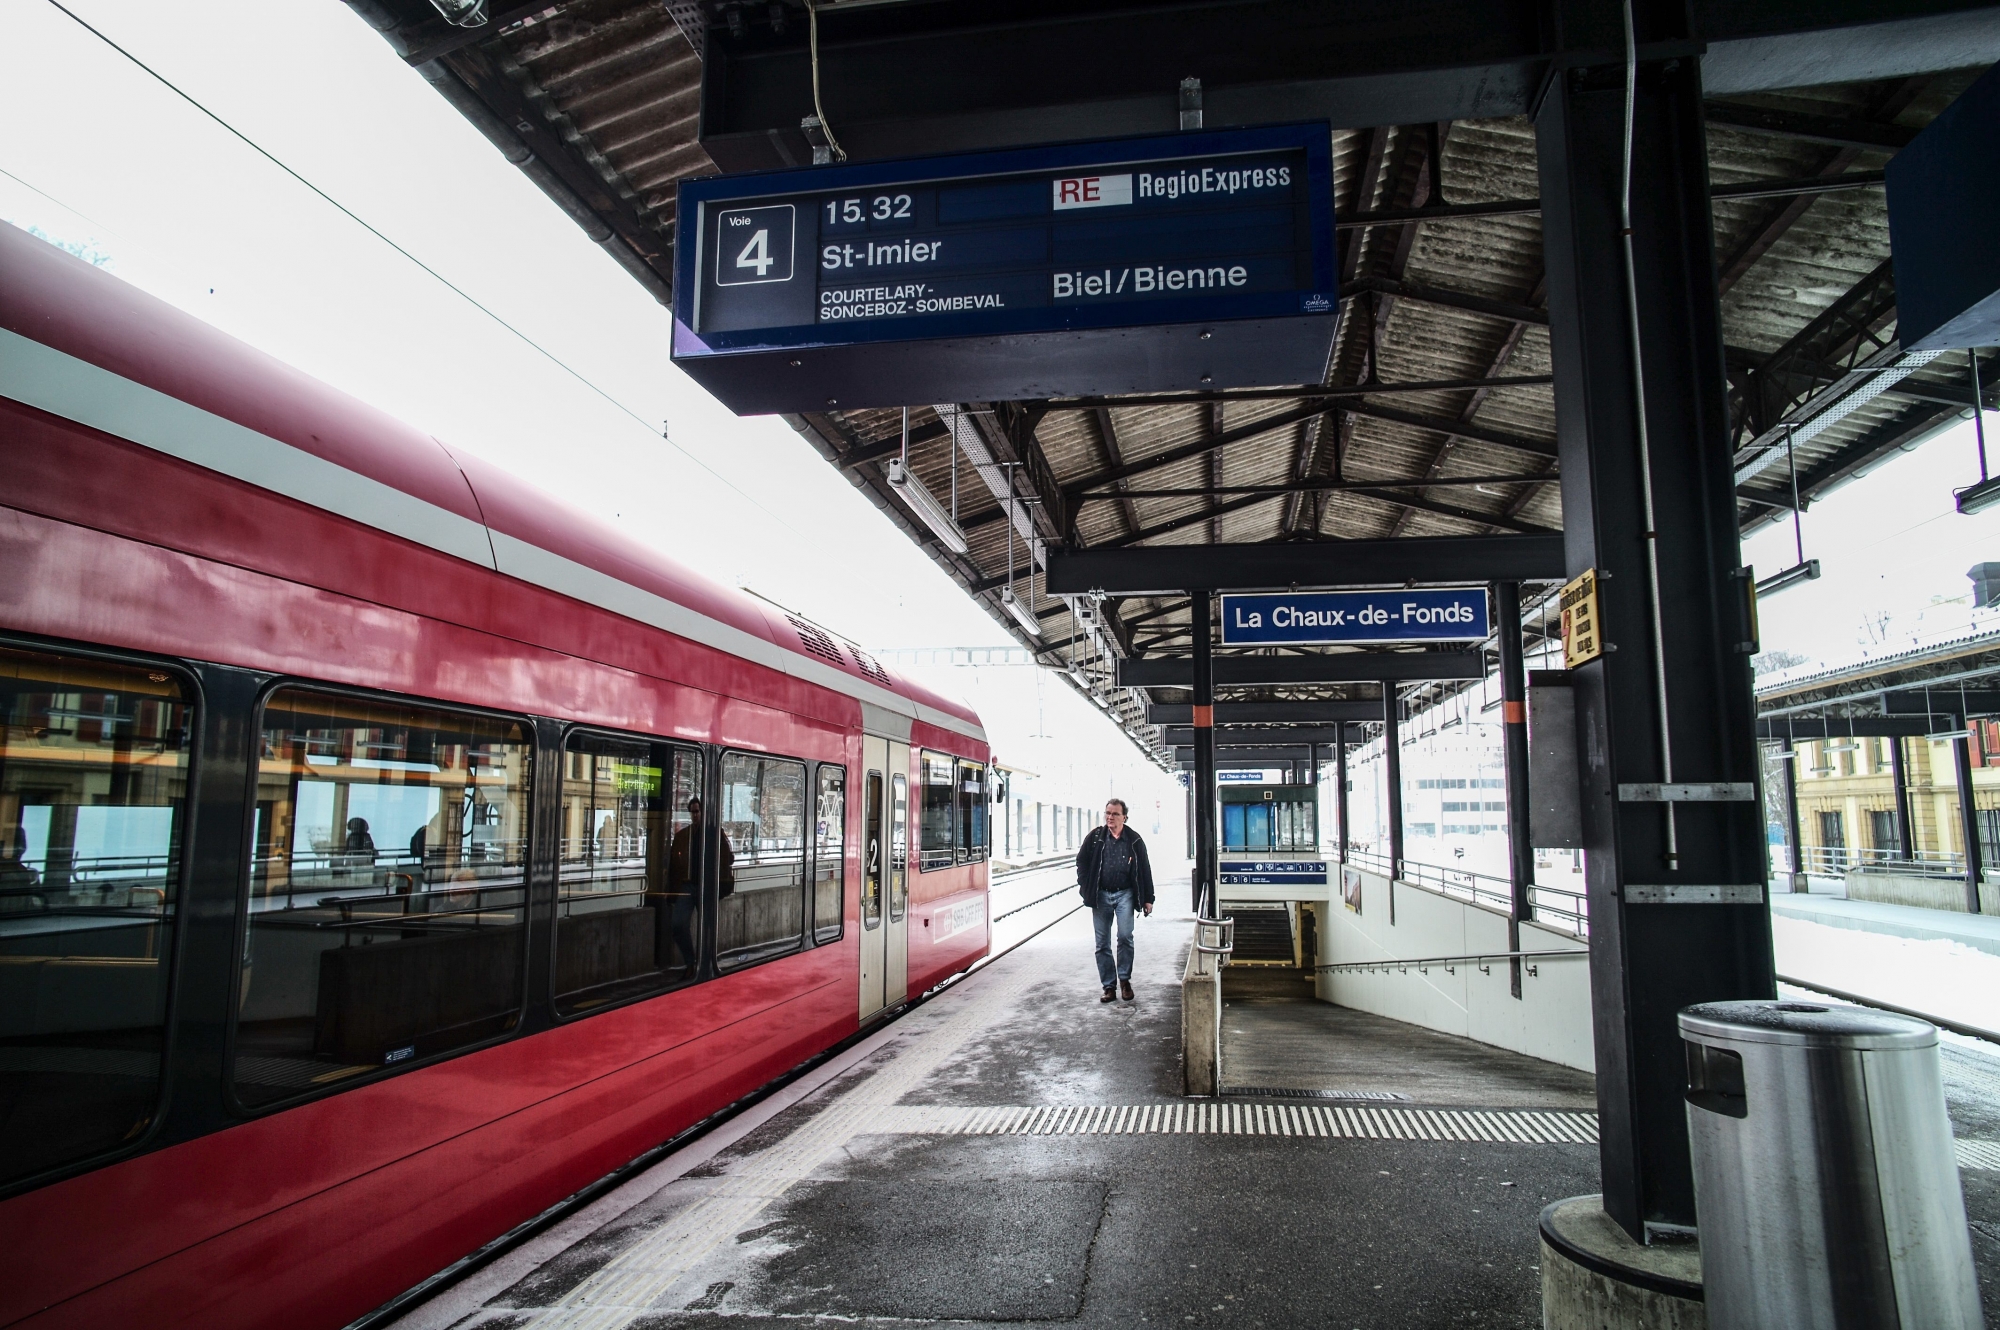 Quai de gare direction Bienne par Saint-Imier.

LA CHAUX-DE-FONDS 16 02 2016
Photo: Christian Galley LA CHAUX-DE-FONDS